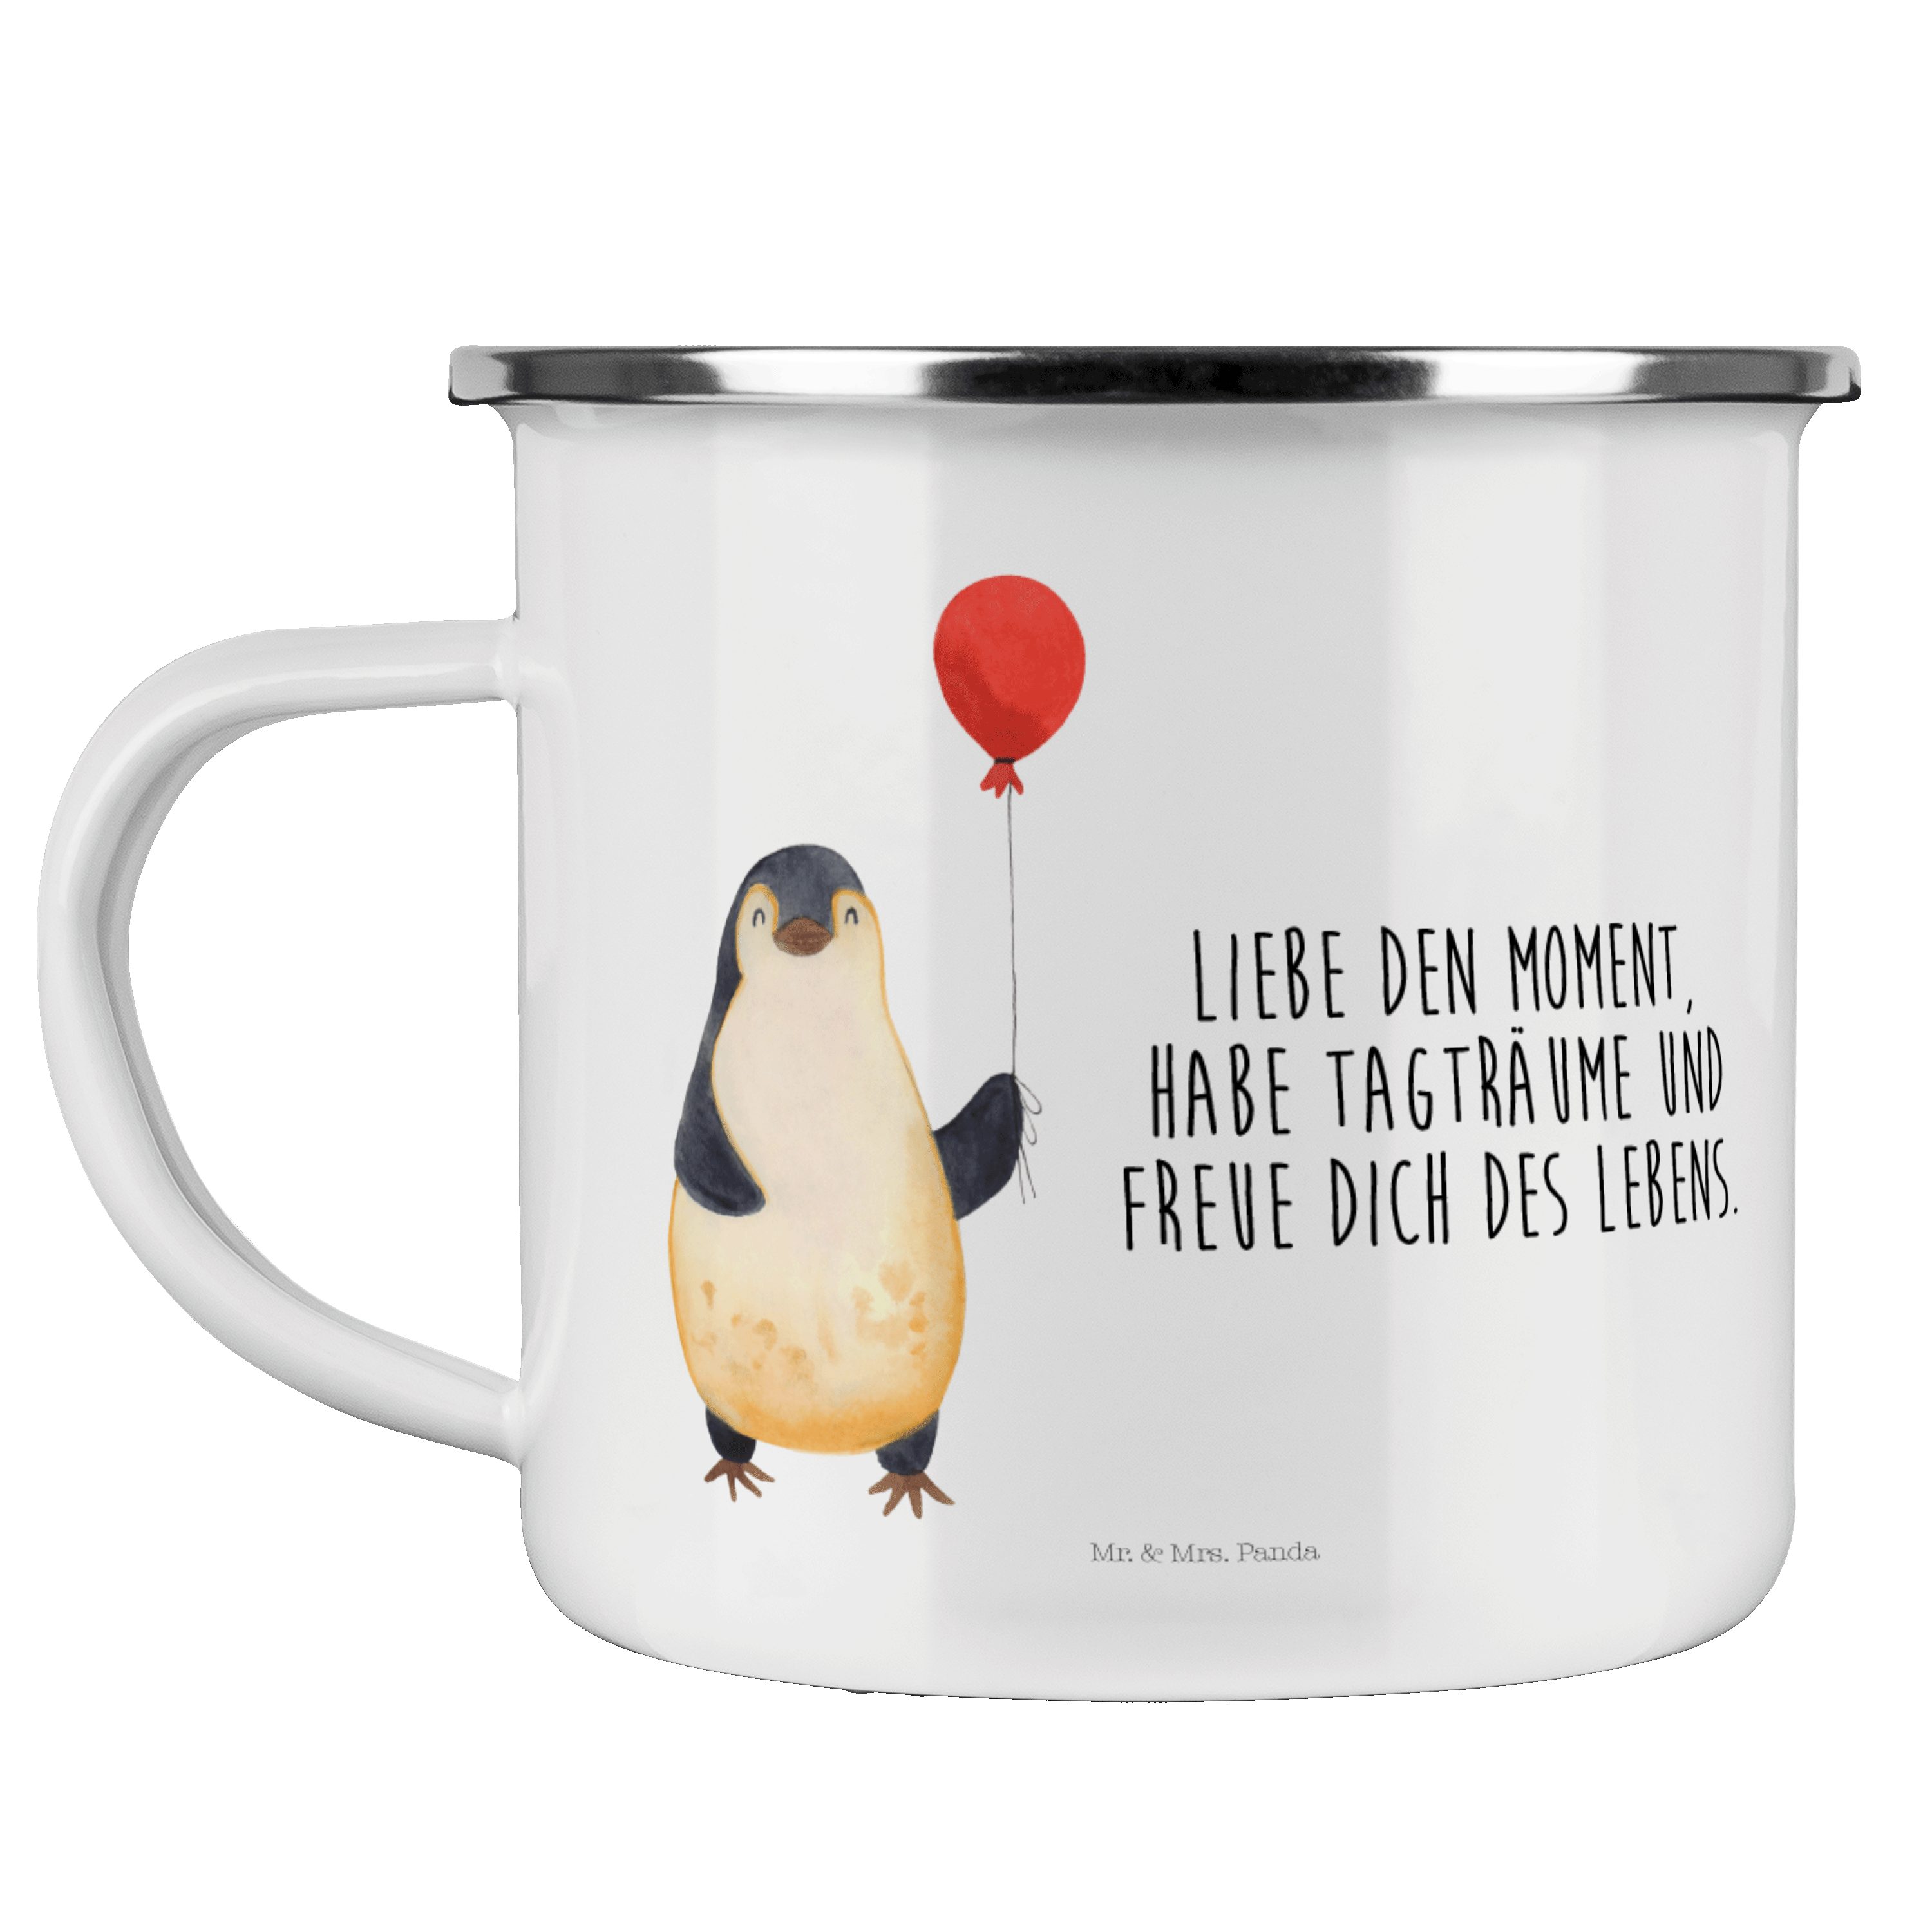 Mr. & Mrs. Panda Becher Pinguin Luftballon - Weiß - Geschenk, Kind, Jahrmarkt, Trinkbecher, M, Emaille